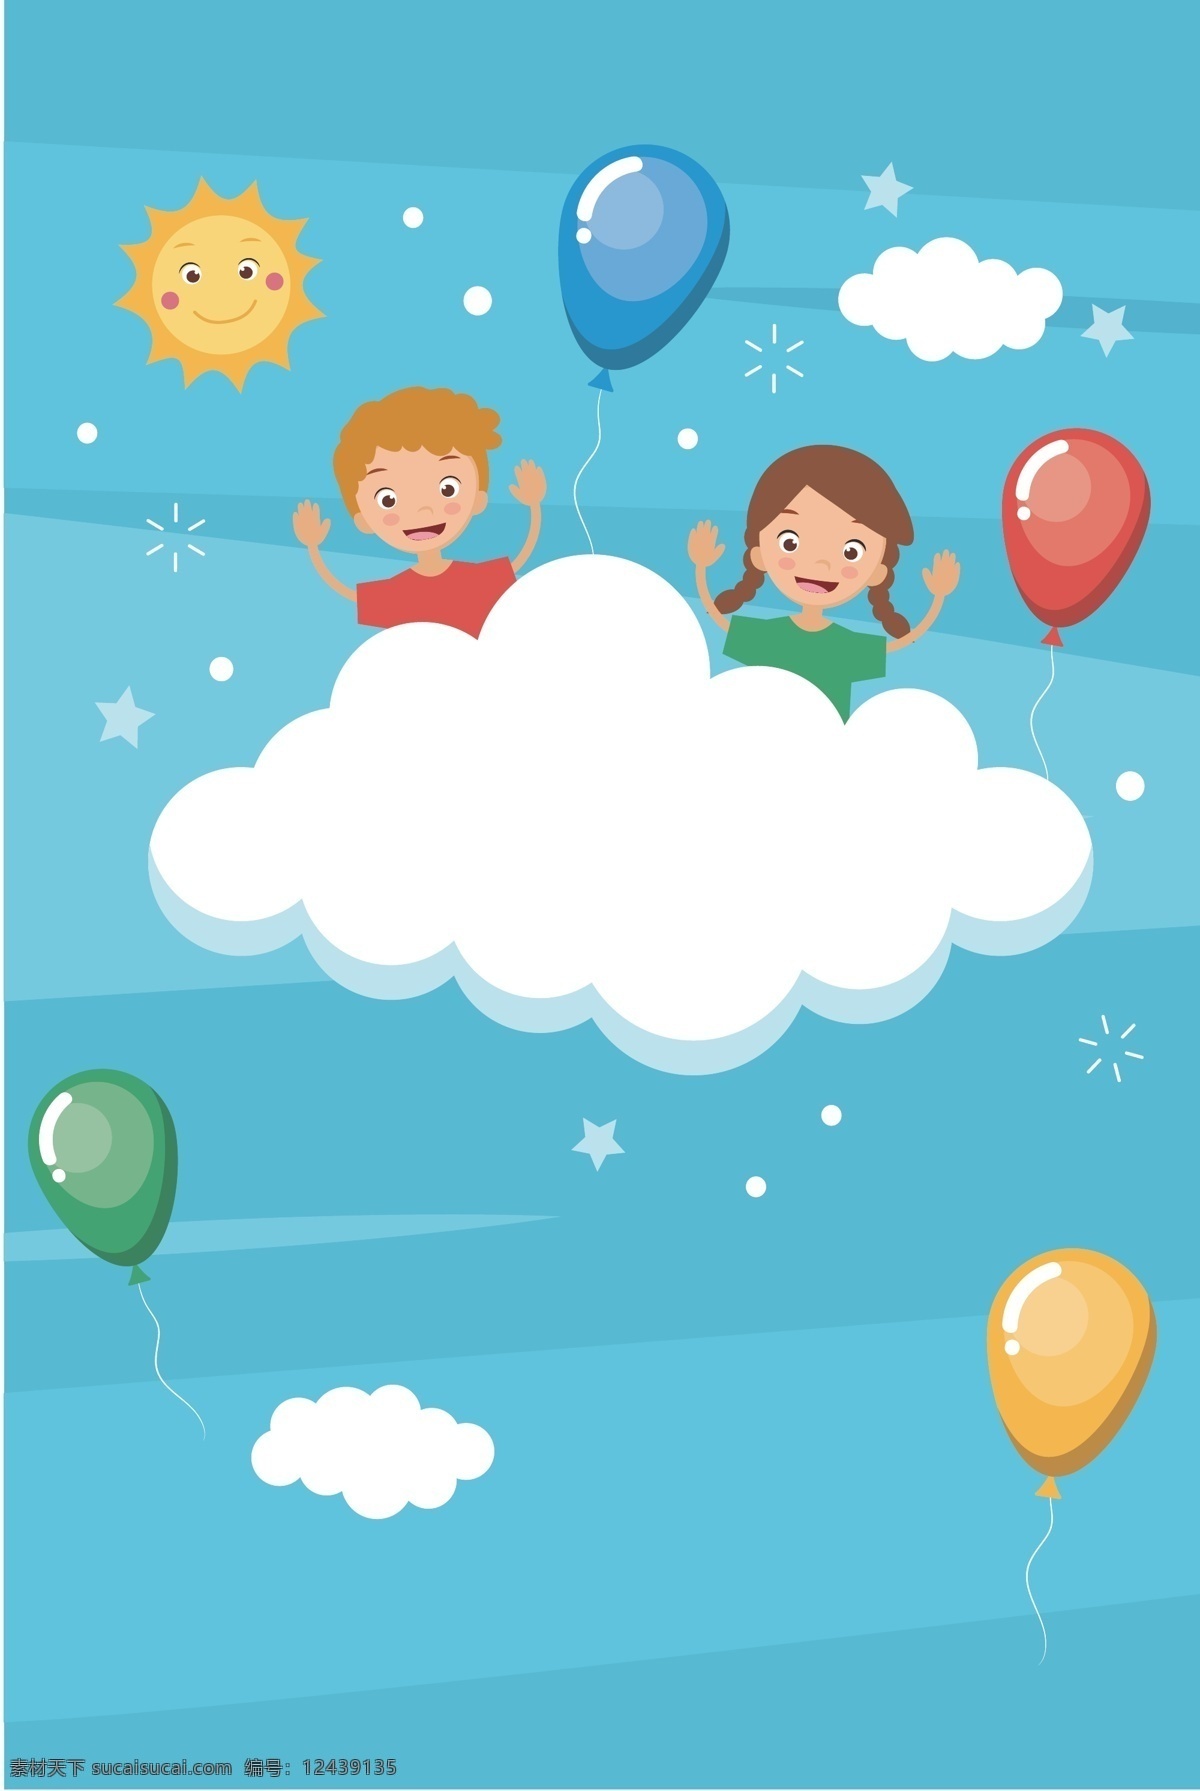 卡通 清新 六一儿童节 矢量 背景 六一 儿童节 61儿童节 疯狂61 开学季 促销 活动 儿童 国际儿童节 学生 气球 云朵